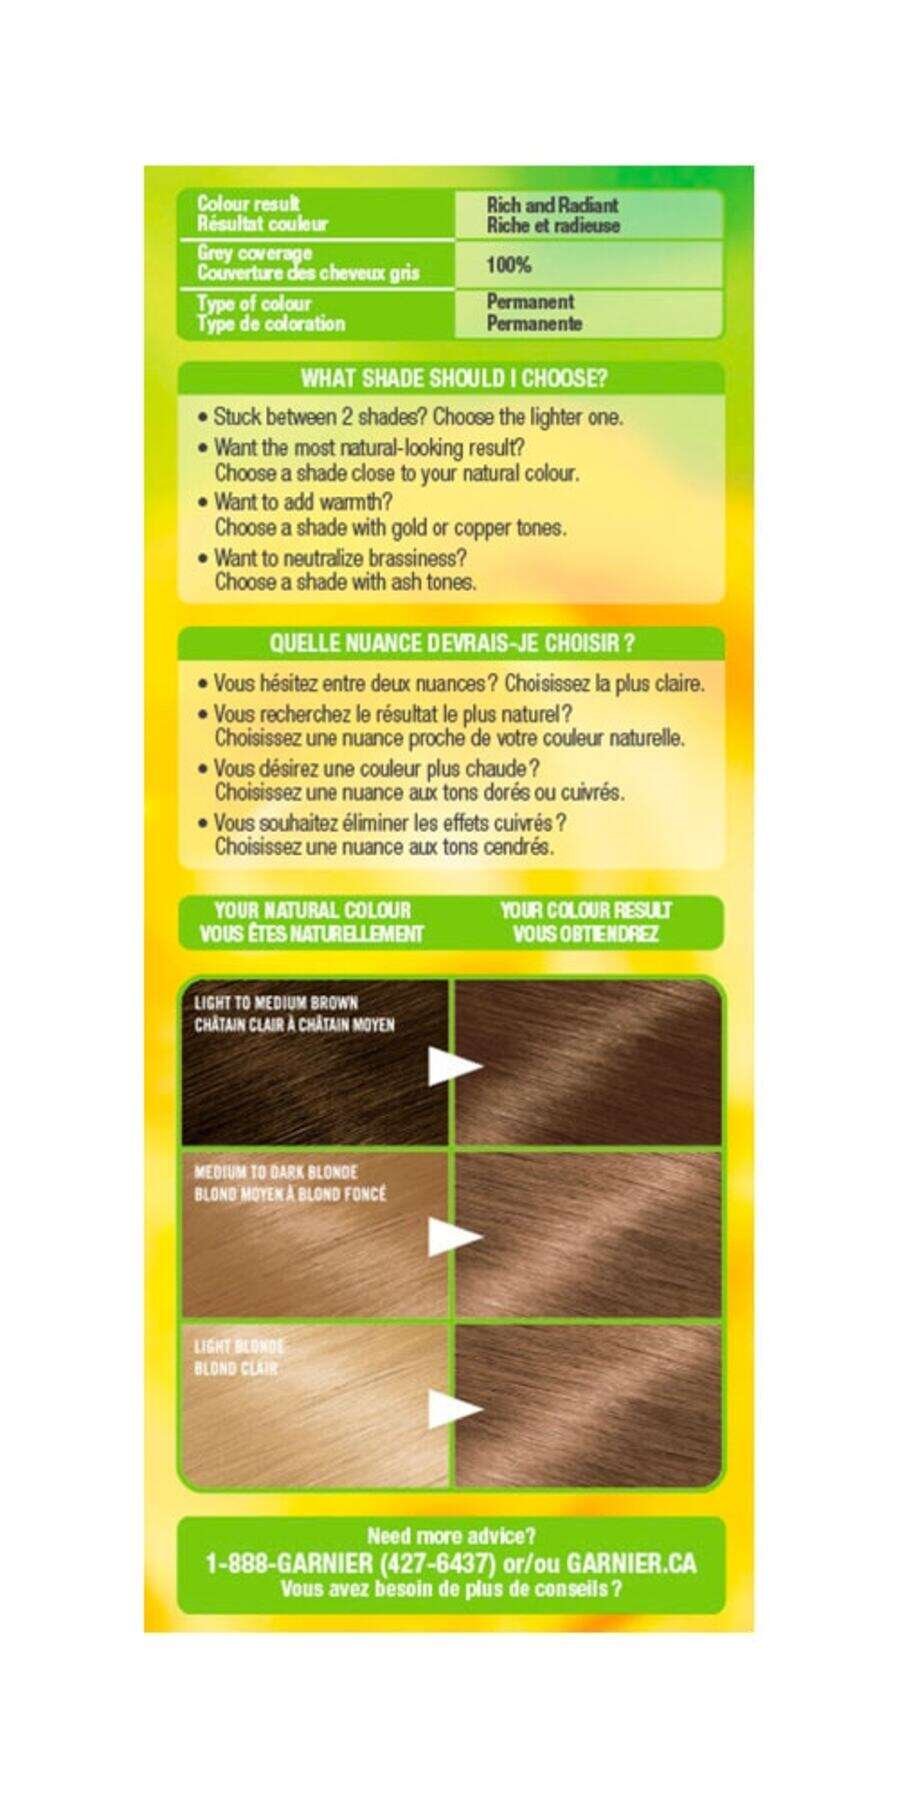 garnier hair dye nutrisse cream 71 dark ash blonde 0603084494910 extra2